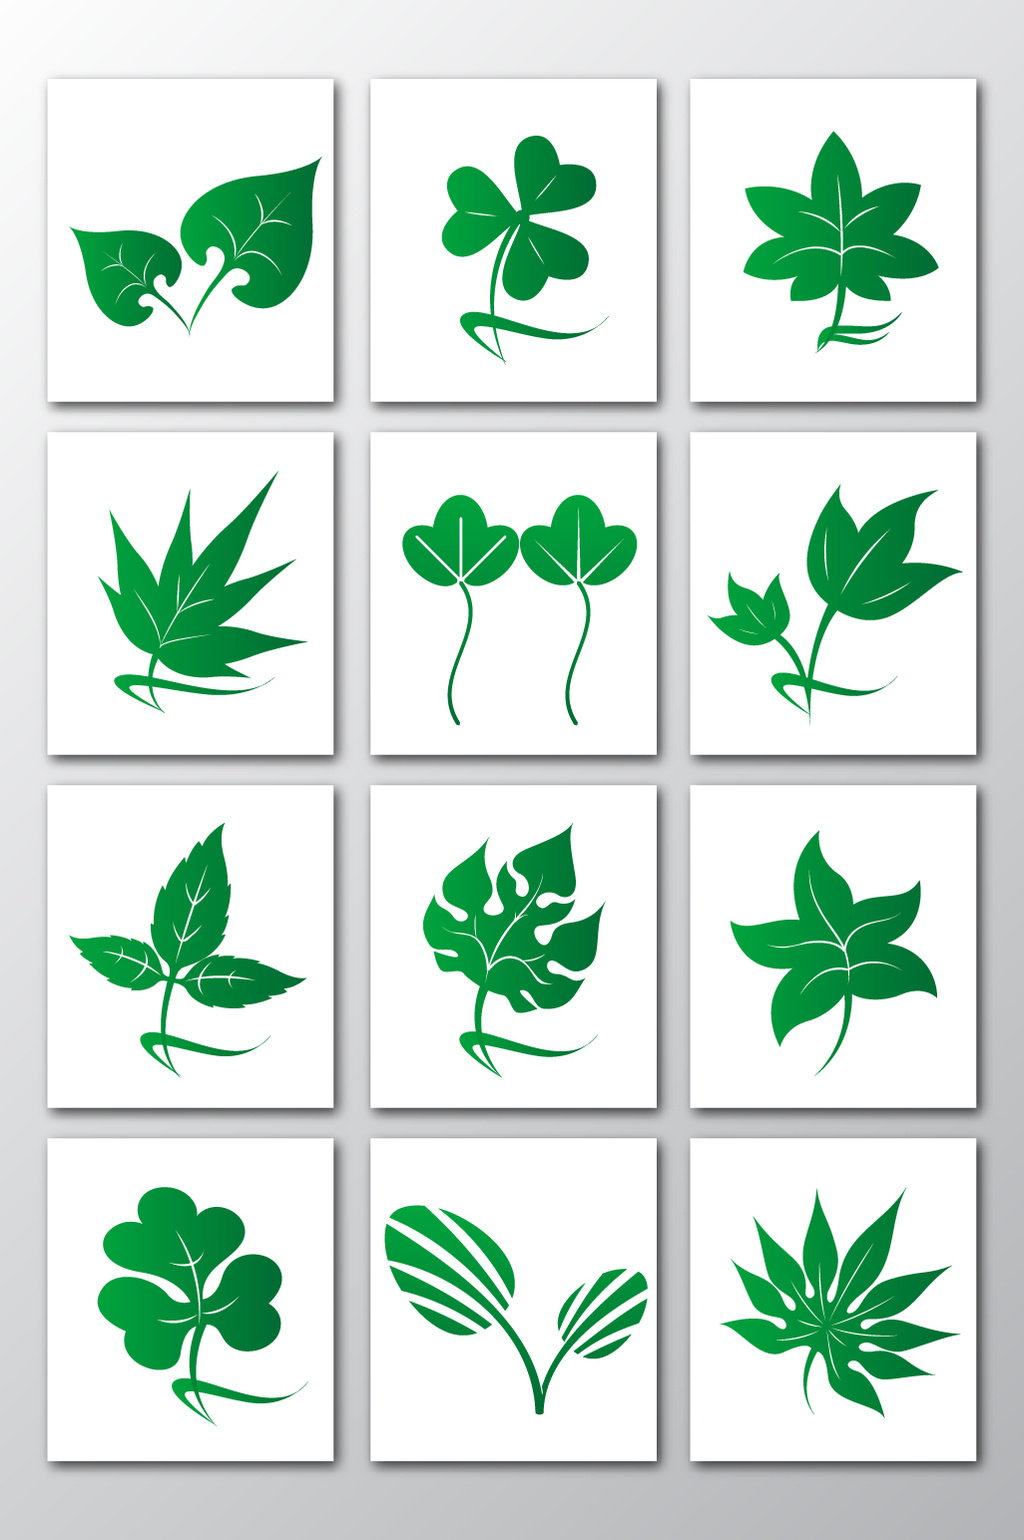 科学网—植物叶子的形状(叶形) - 王从彦的博文